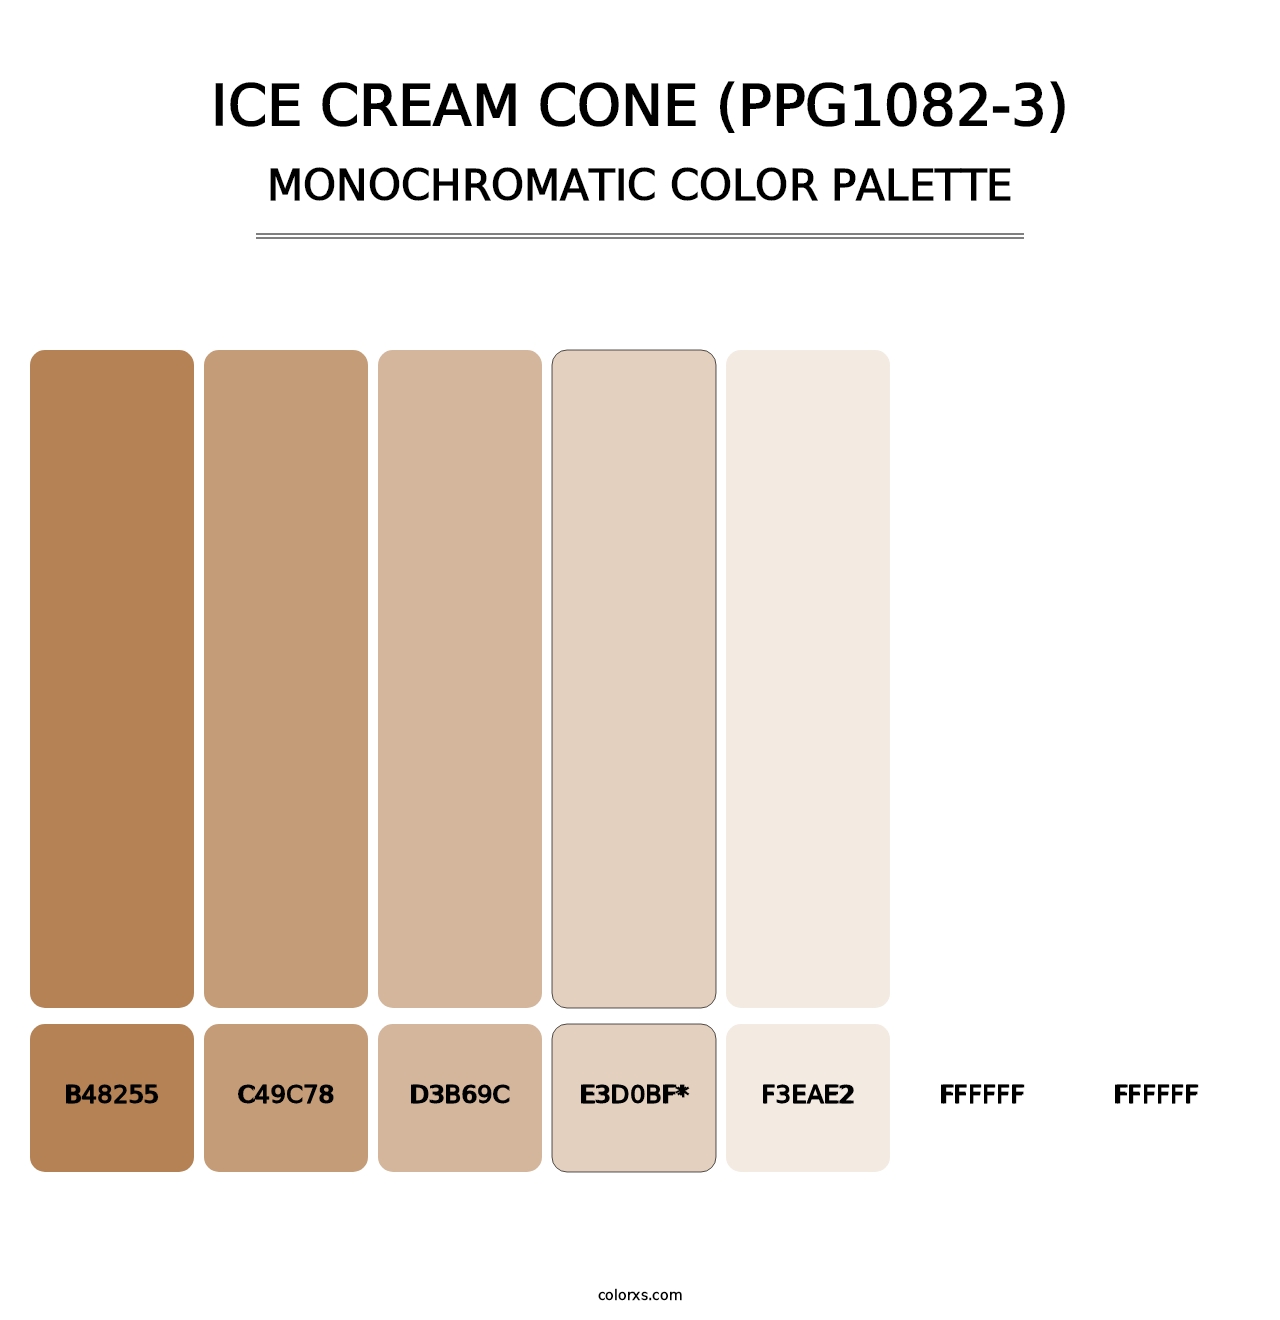 Ice Cream Cone (PPG1082-3) - Monochromatic Color Palette